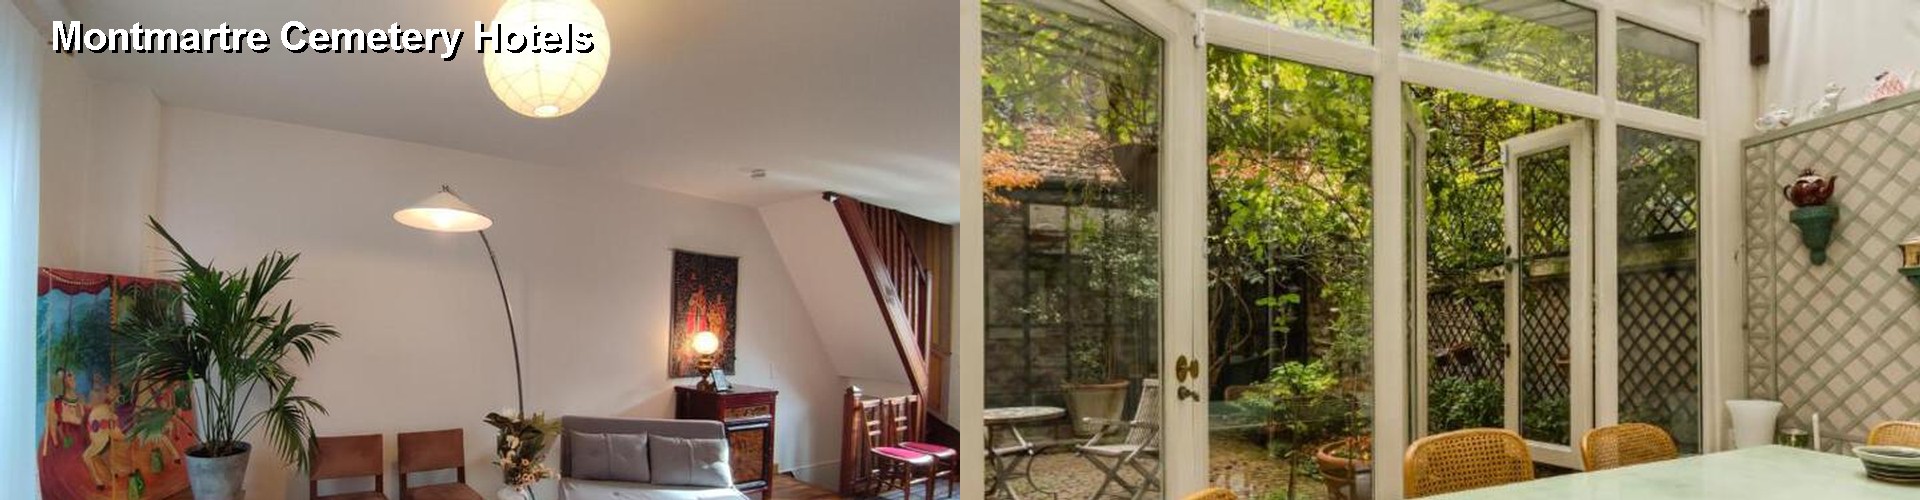 5 Best Hotels near Montmartre Cemetery